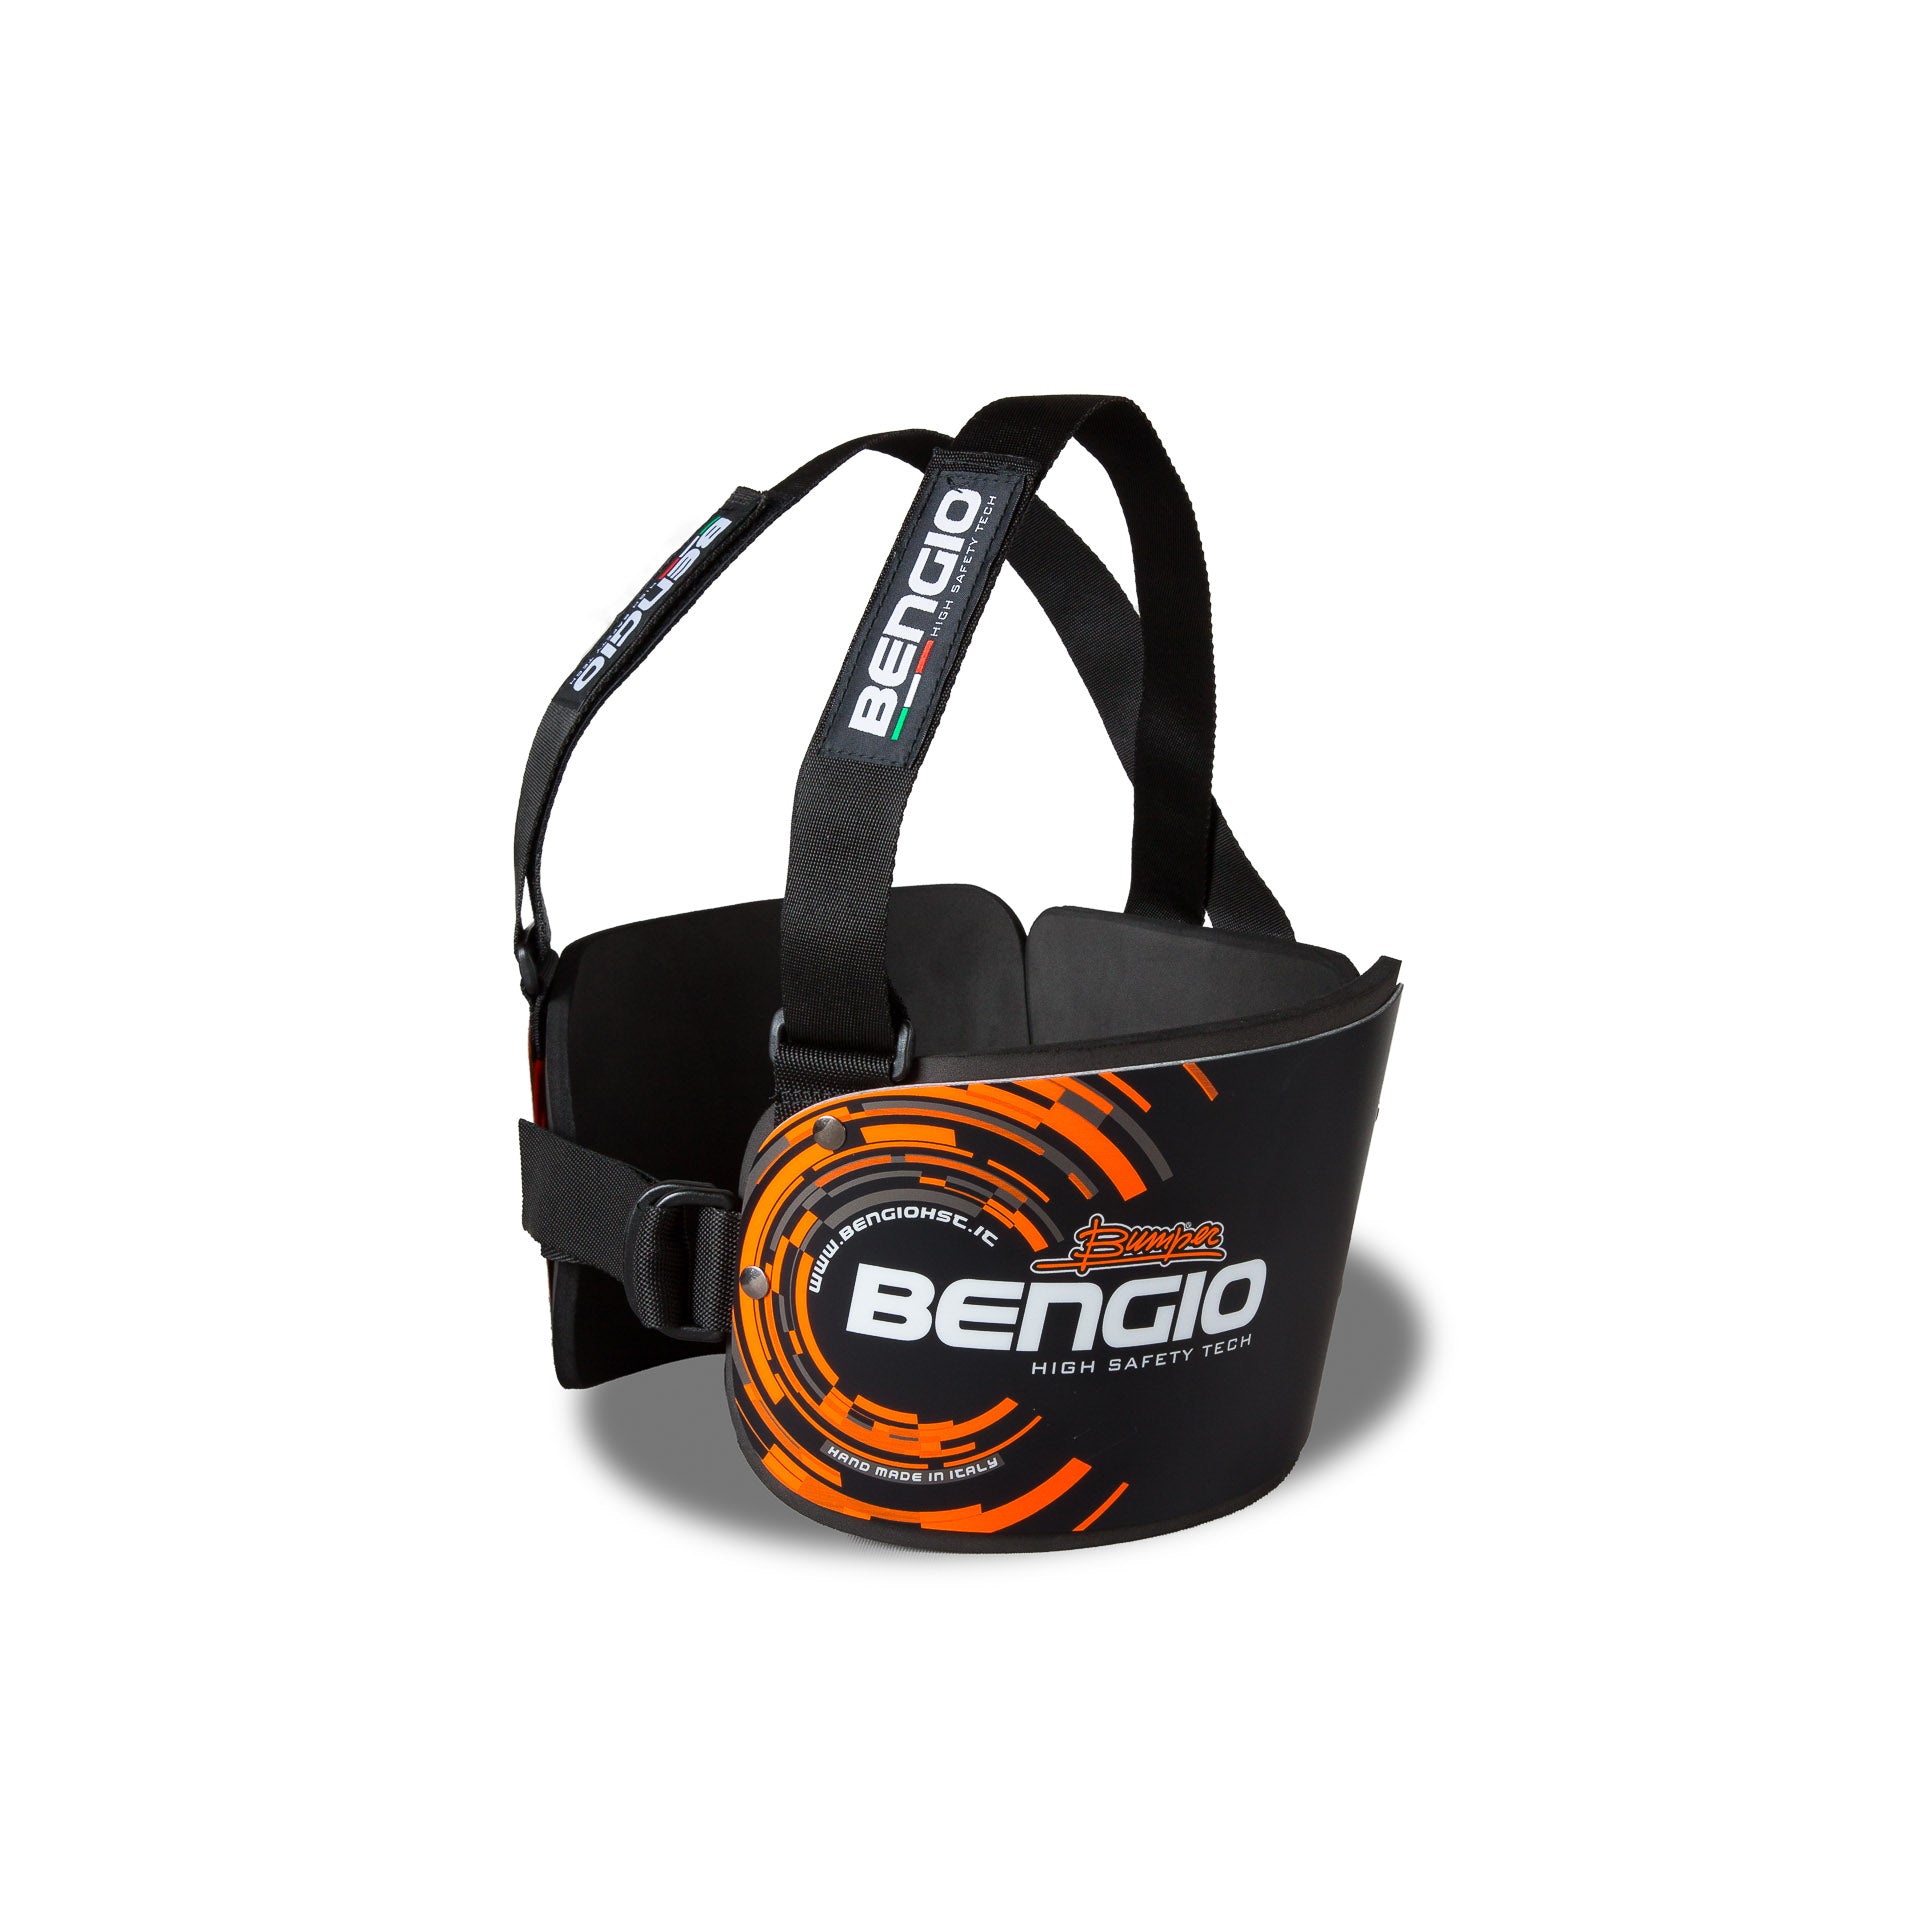 BENGIO STDXSBO BUMPER Standard Захист ребер для картингу, чорний/помаранчевий, розмір XS Photo-1 